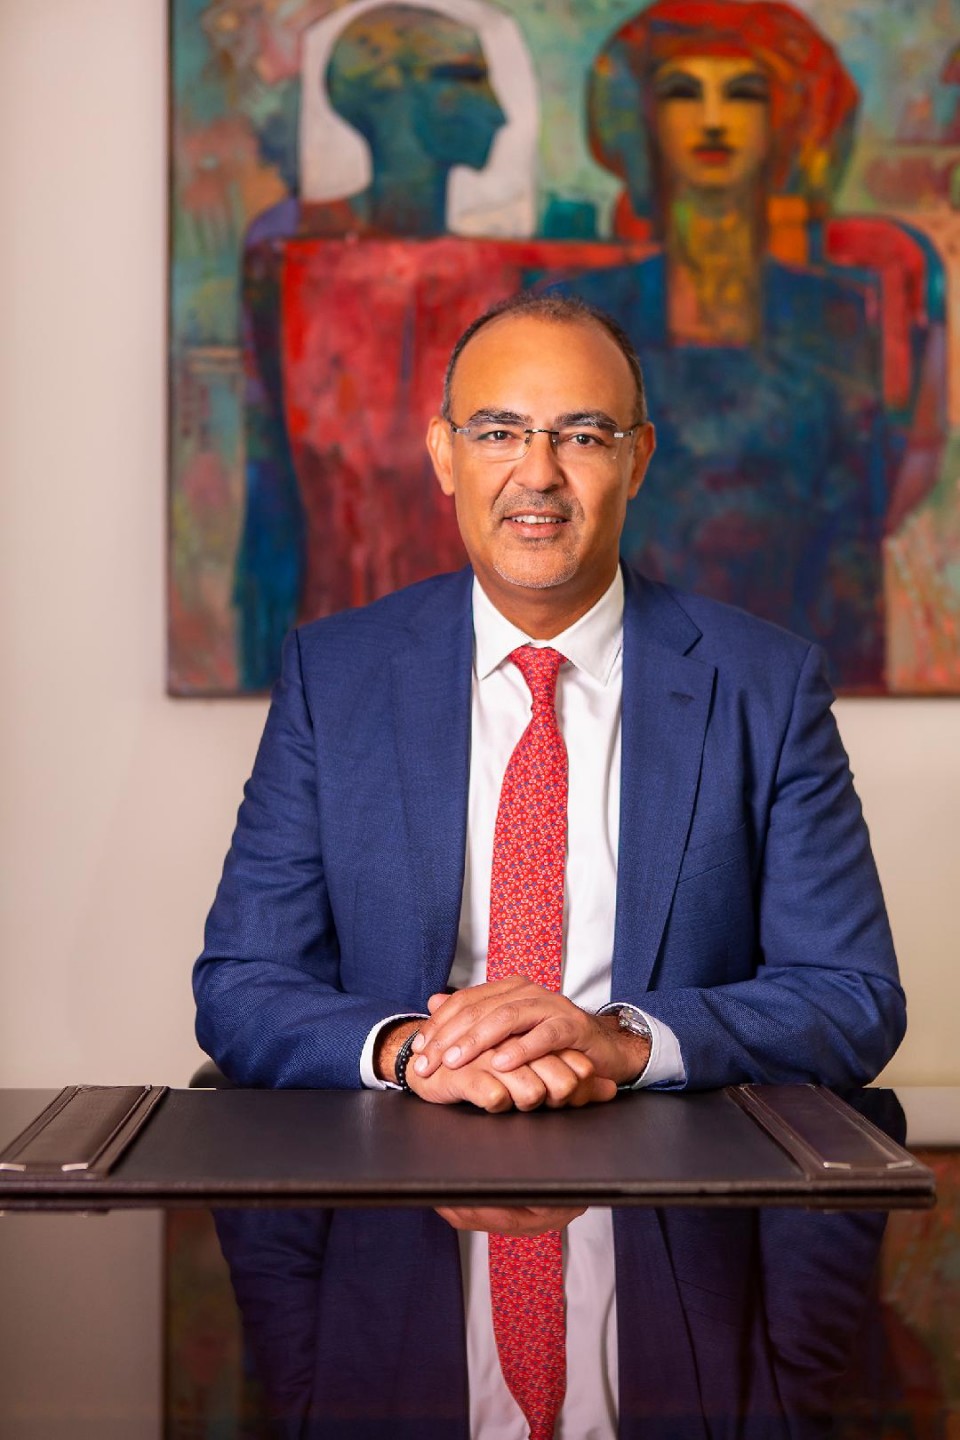 محمد سلطان، الرئيس التنفيذي لقطاع العمليات بالبنك التجاري الدولي مصر